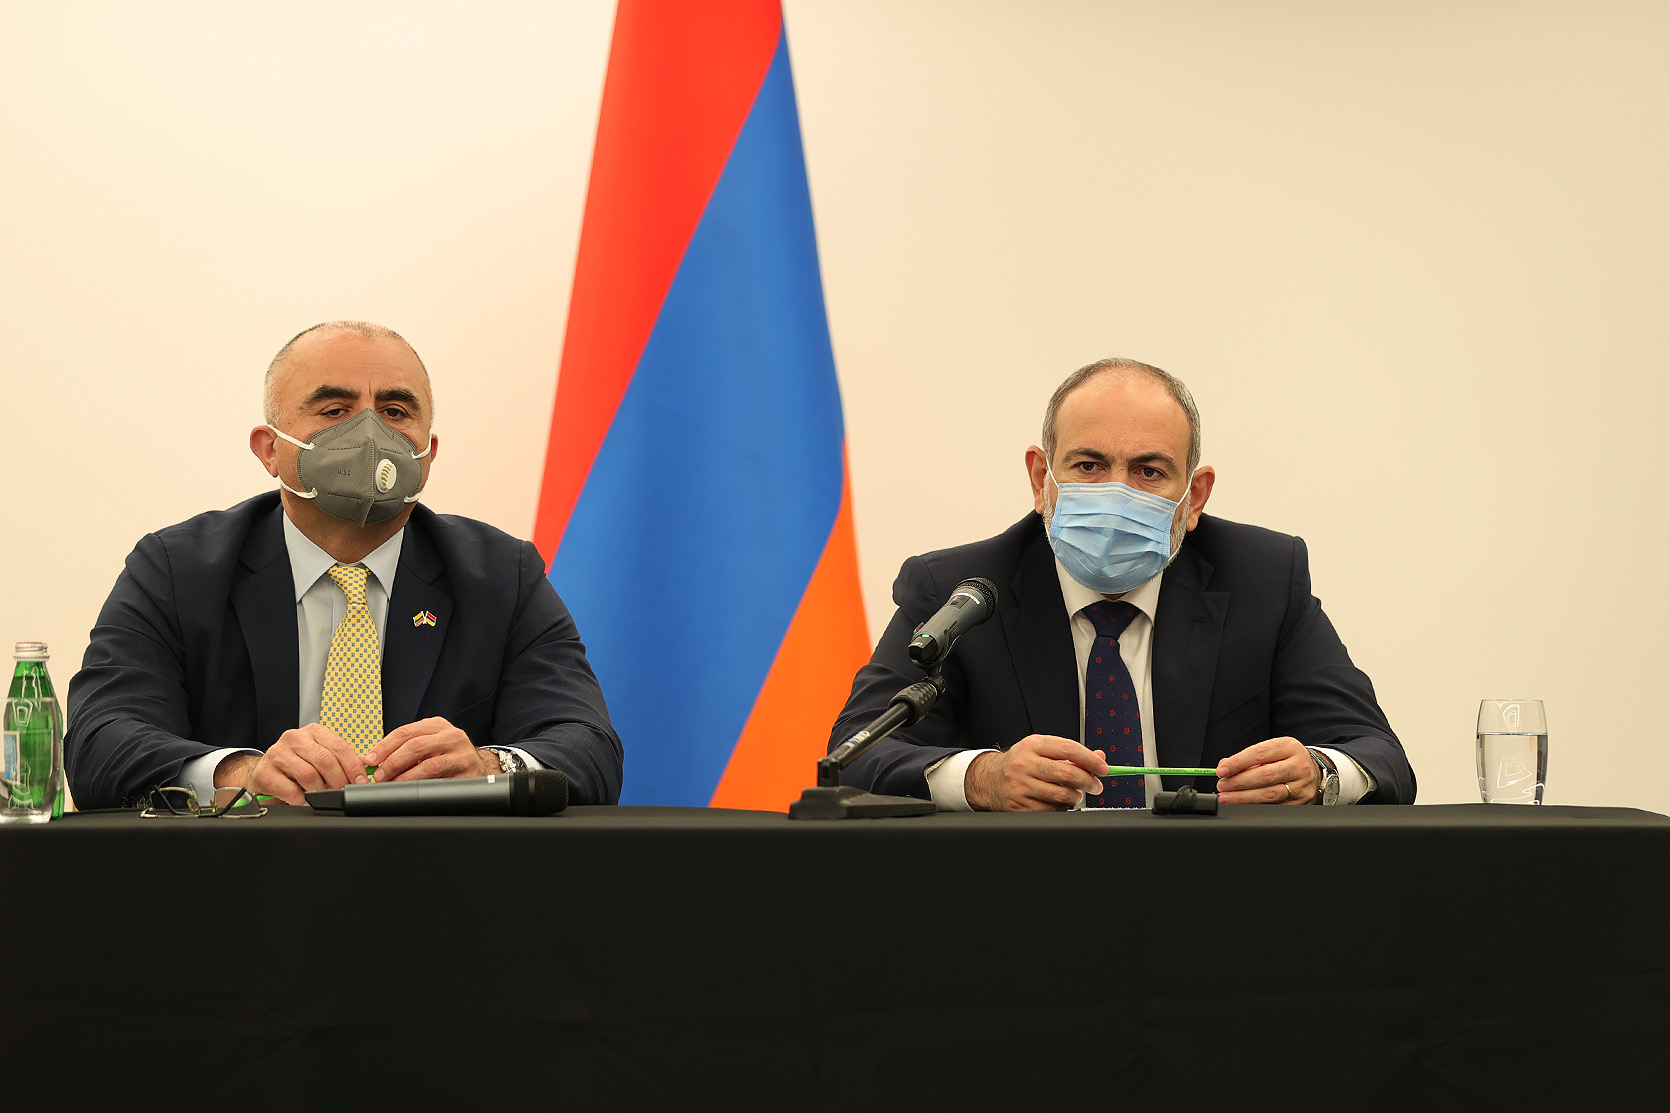 Защита прав армян Карабаха, в том числе права на самоопределение - наш приоритет: Пашинян